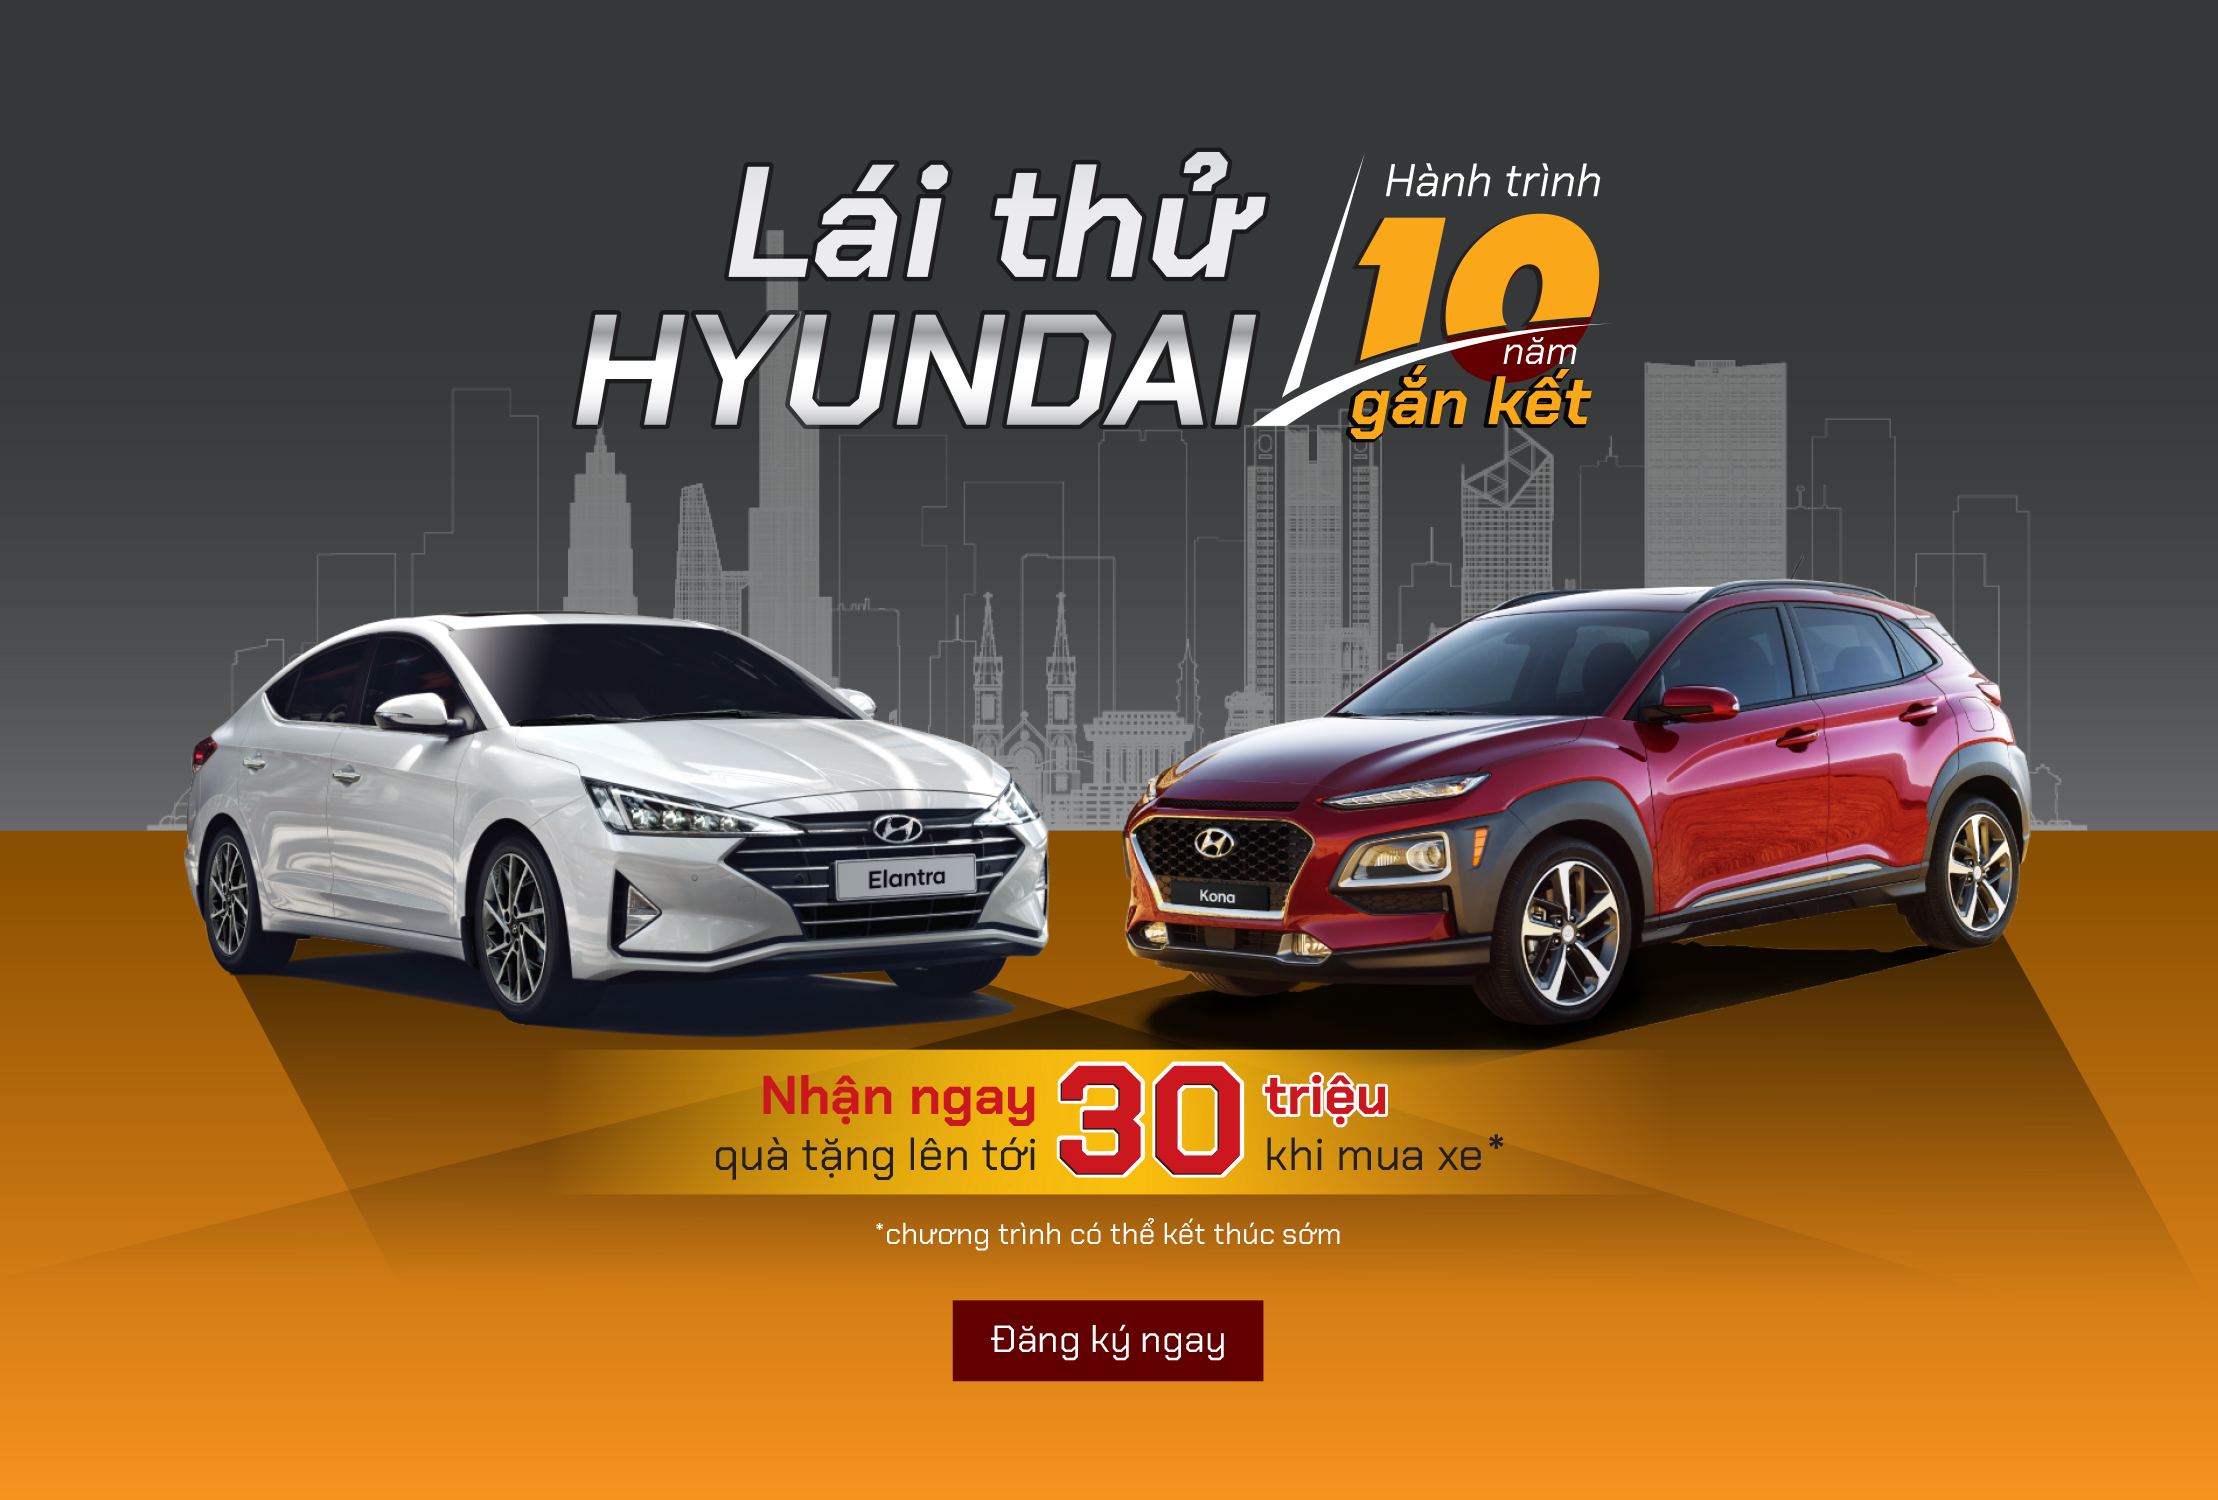 Lái thử Hyundai – Hành trình 10 năm gắn kết. Nhận ngay quà tặng lên tới 30 triệu khi mua xe.